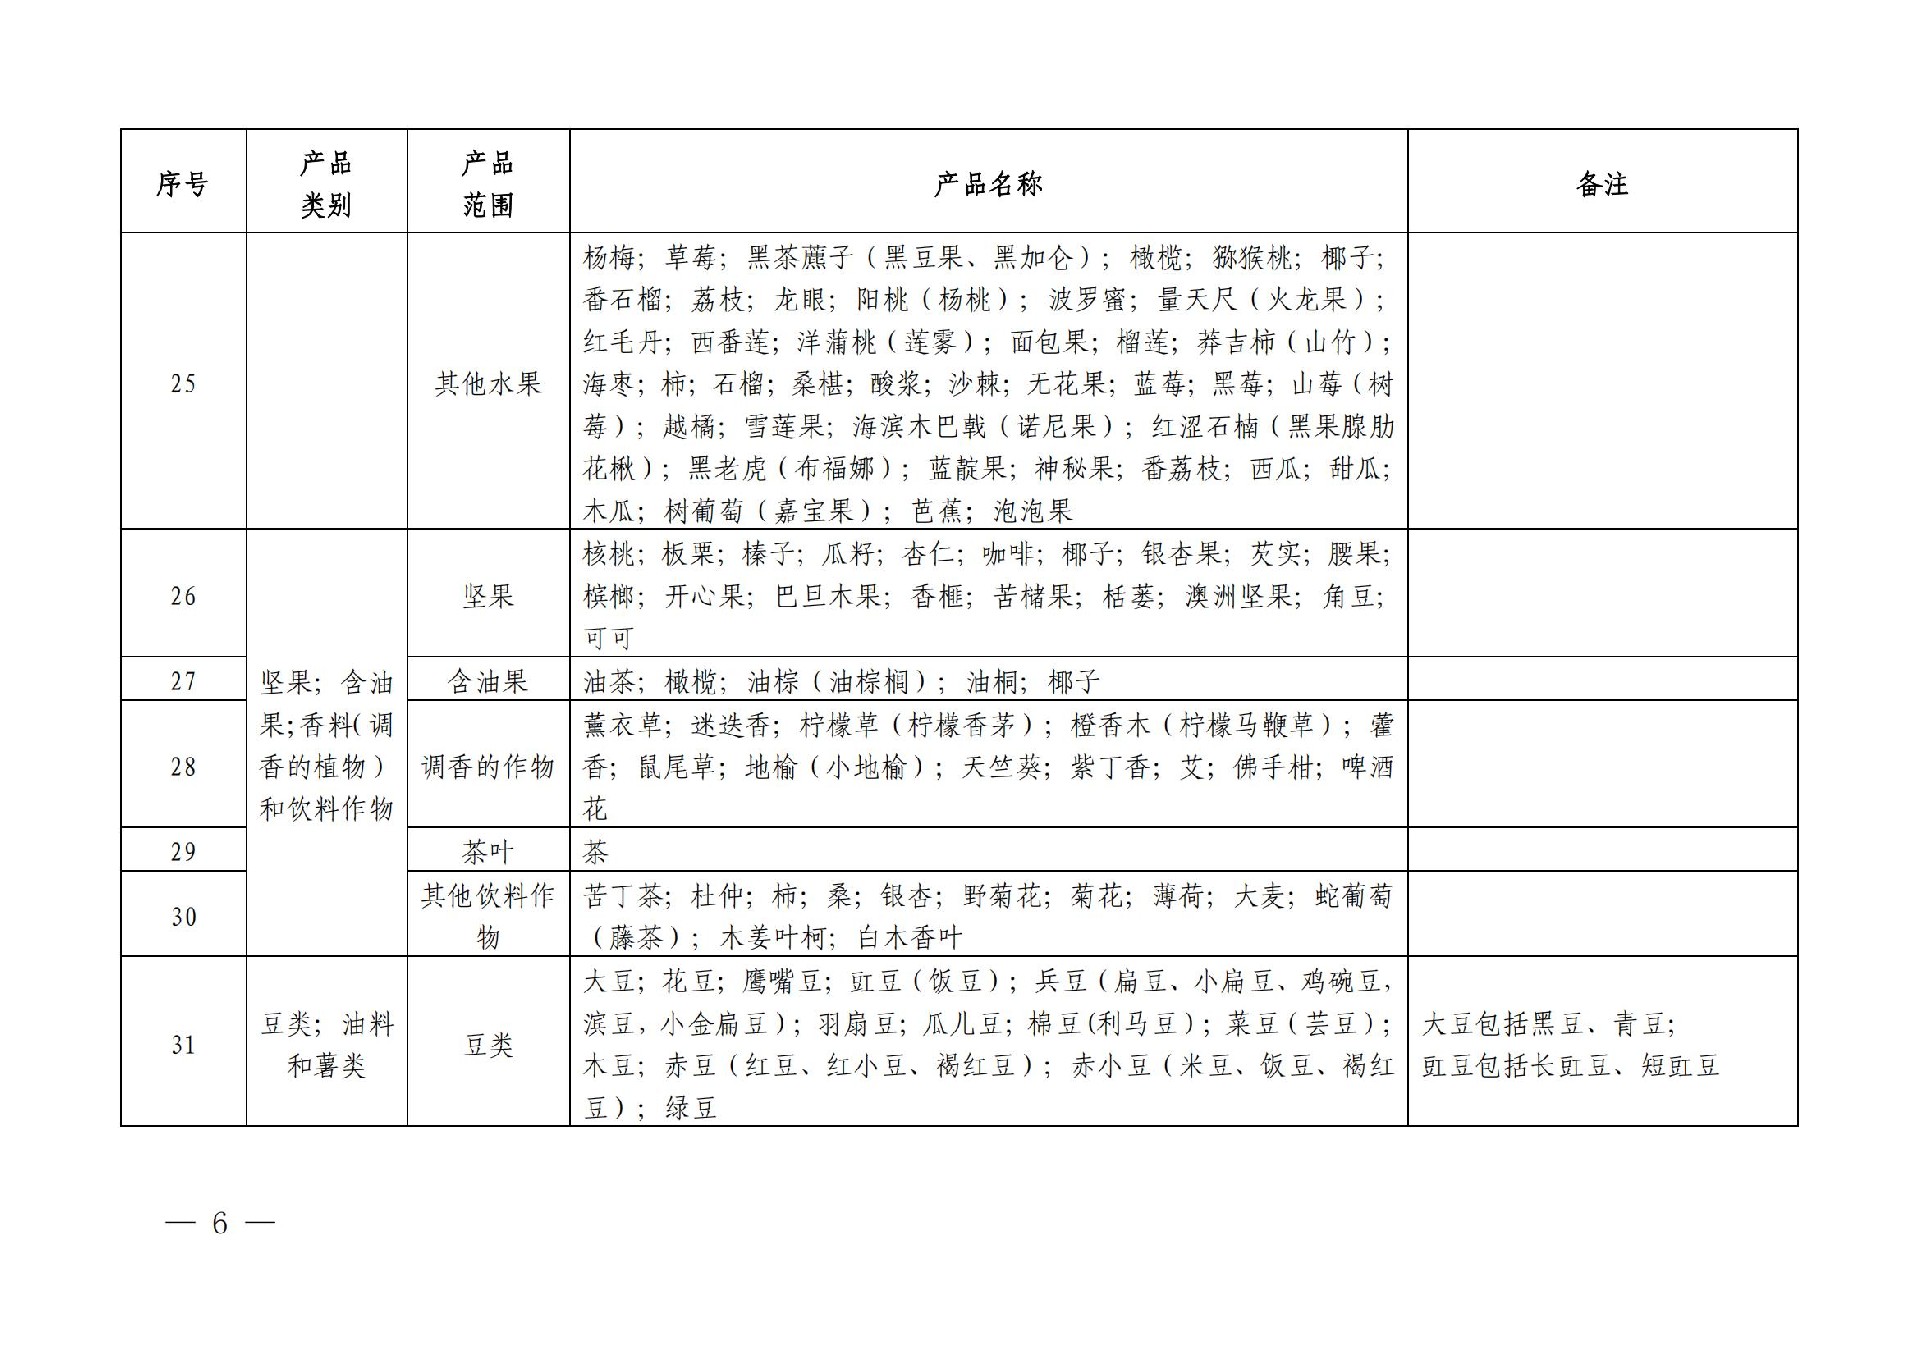 有机产品认证目录【认监委2019年第22号公告】(1)_05.jpg